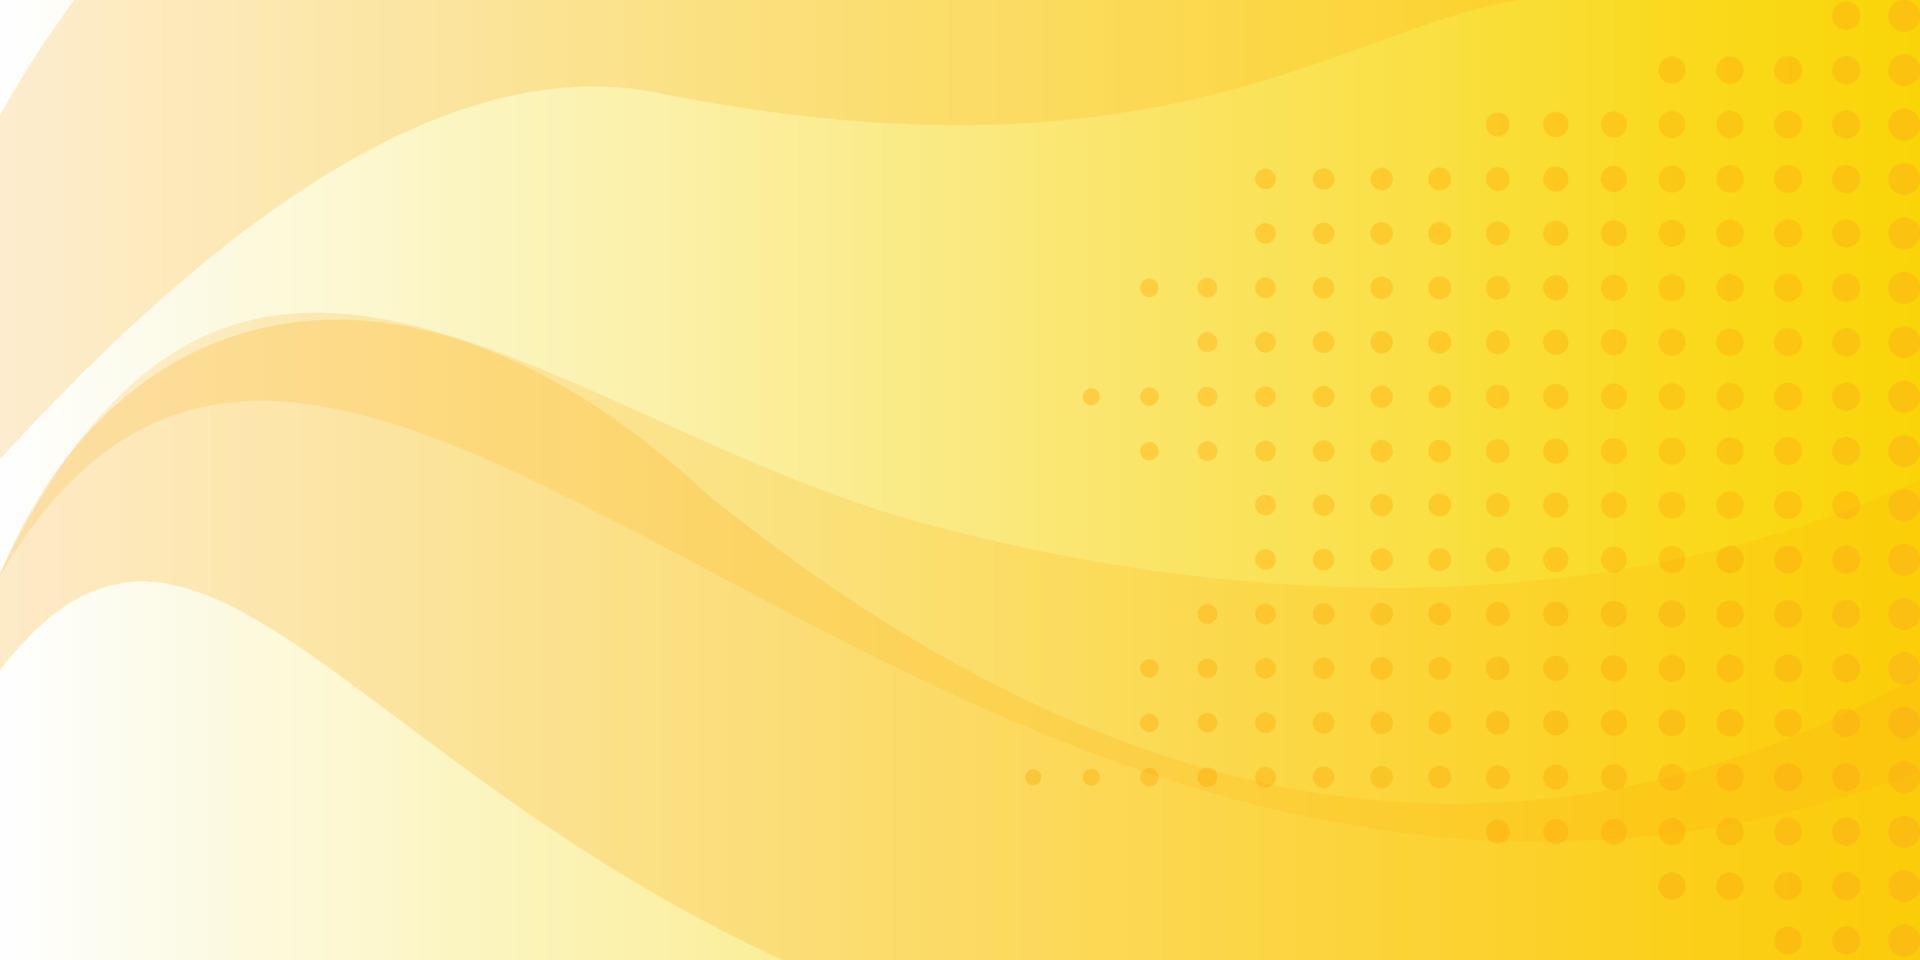 design banner astratto, sfondo vettoriale giallo astratto in stile fumetto punti deboli e sfumatura di colore da giallo a arancione